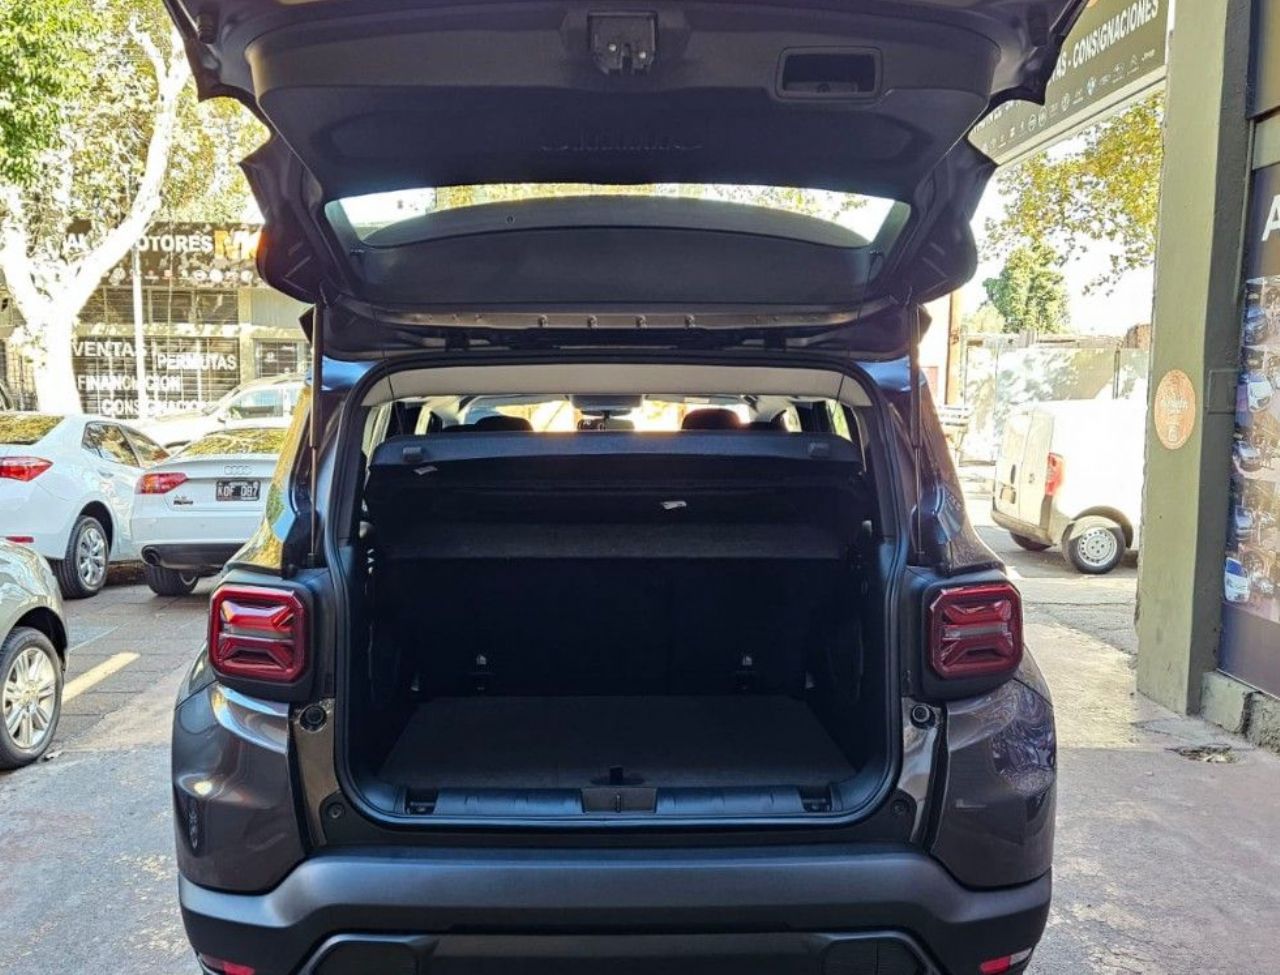 Jeep Renegade Nuevo Financiado en Mendoza, deRuedas